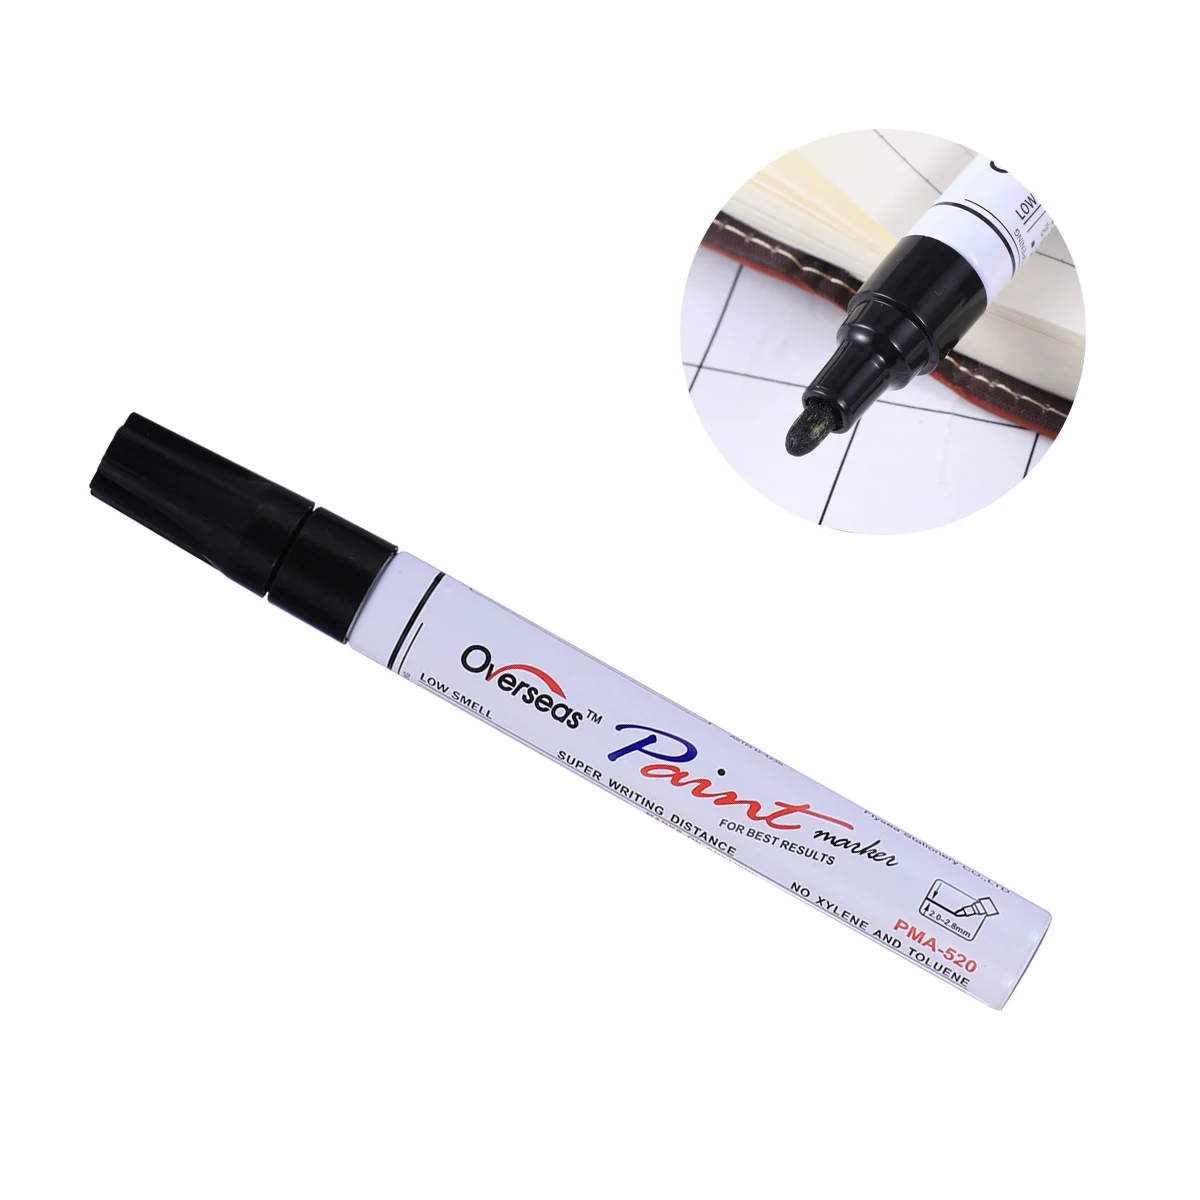 

Ручка для ремонта автомобильных царапин, черная маркерная ручка 28 мм, универсальная Водонепроницаемая Перманентная маркерная ручка для автомобильной шины, протектора, резины, металла